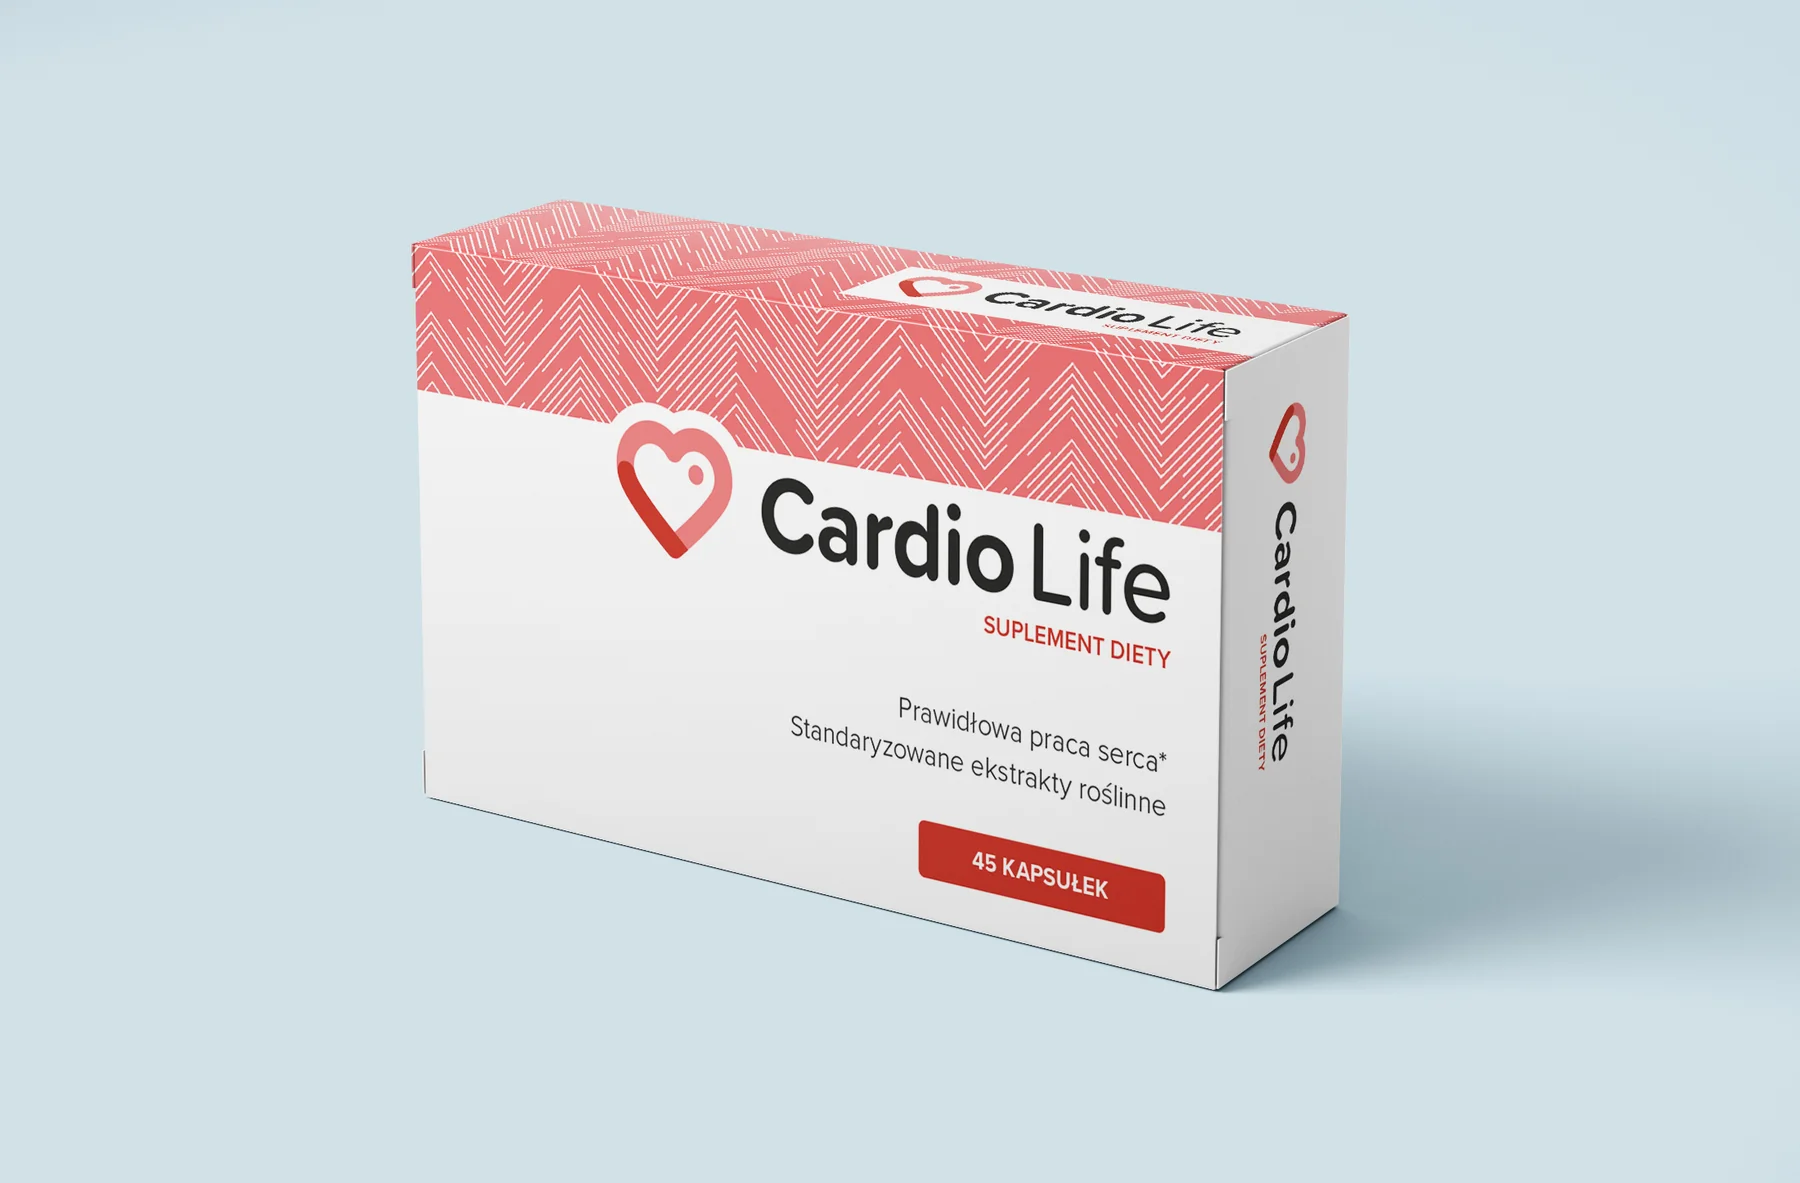 Cardio Life - jak to funguje - zkušenosti - dávkování - složení